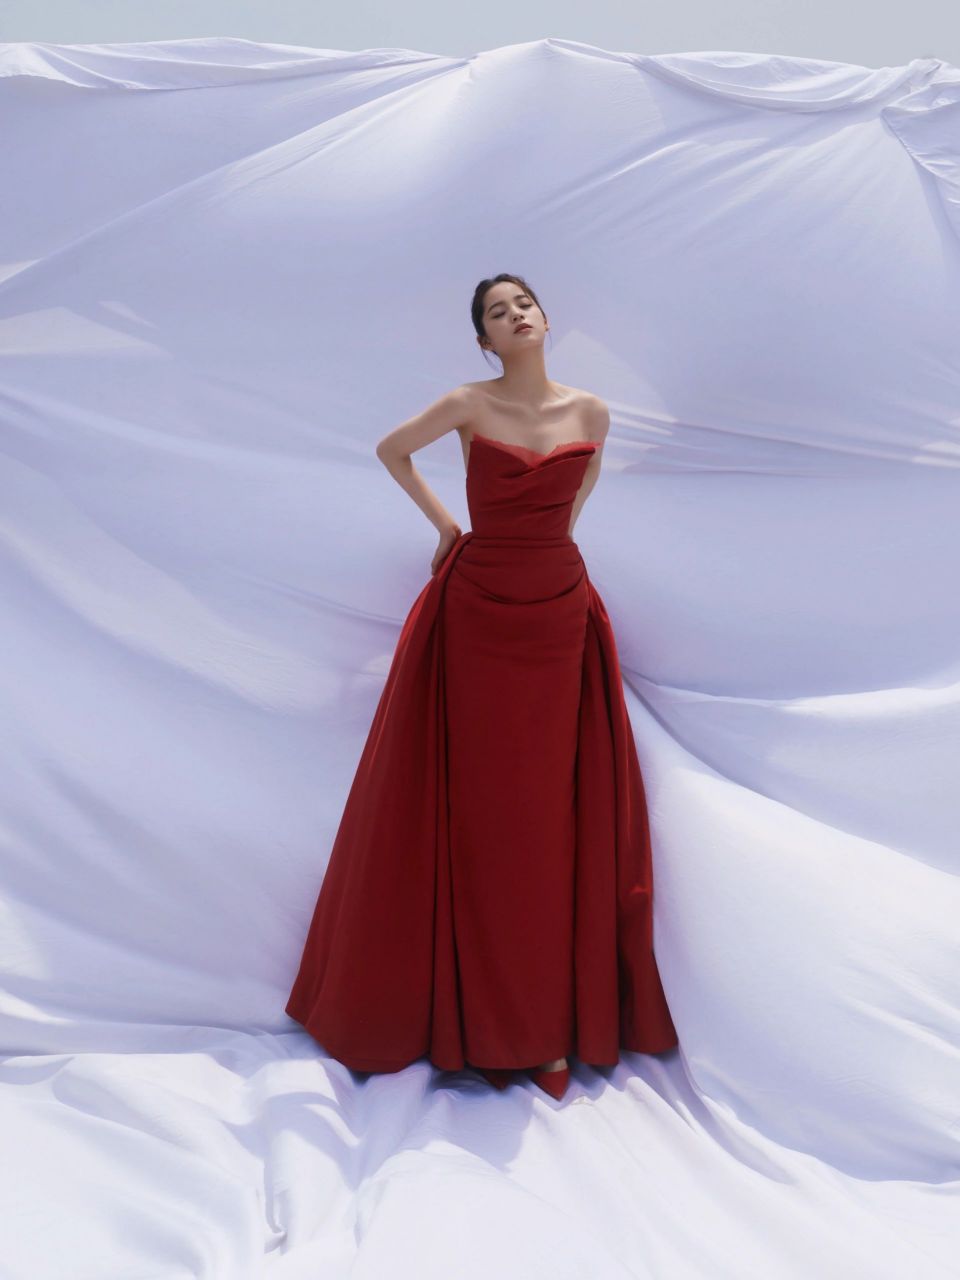 欧阳娜娜晒棚拍新造型,穿红色抹胸礼服裙优雅又性感,女人味越来越足